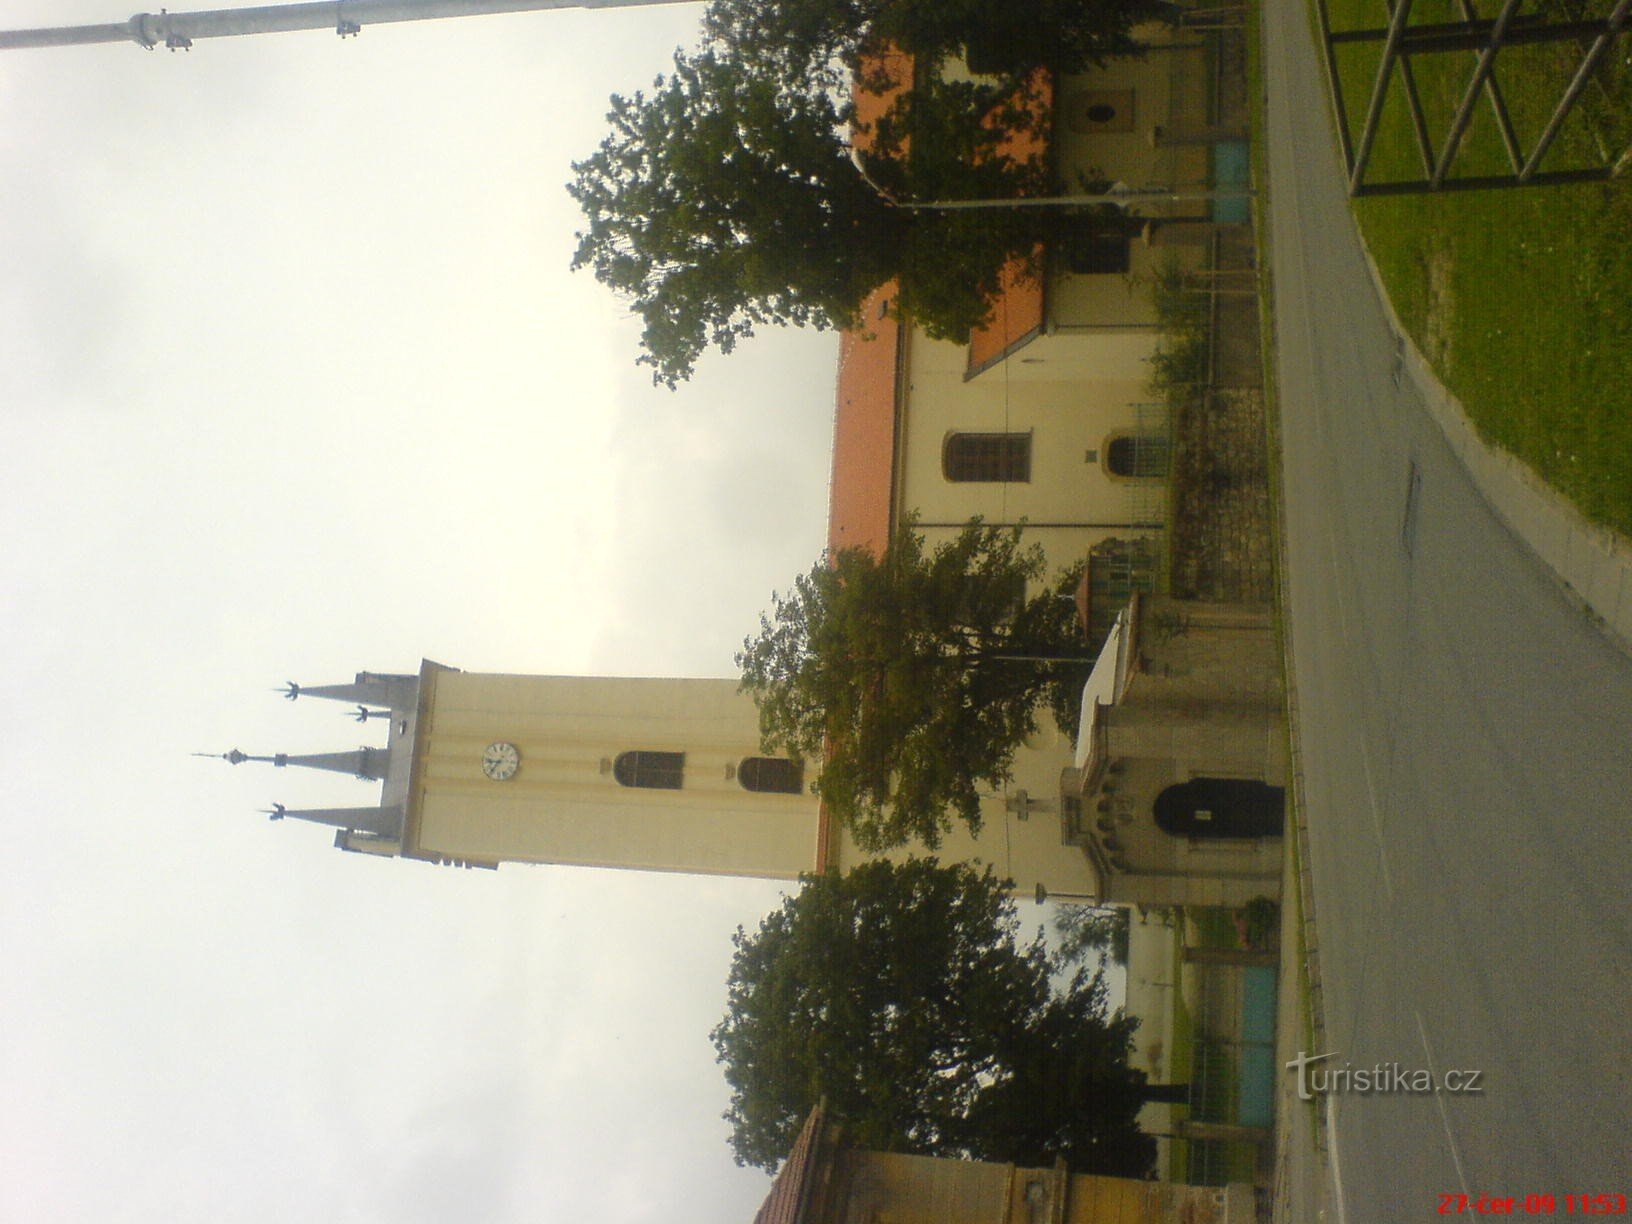 Виродок - церква